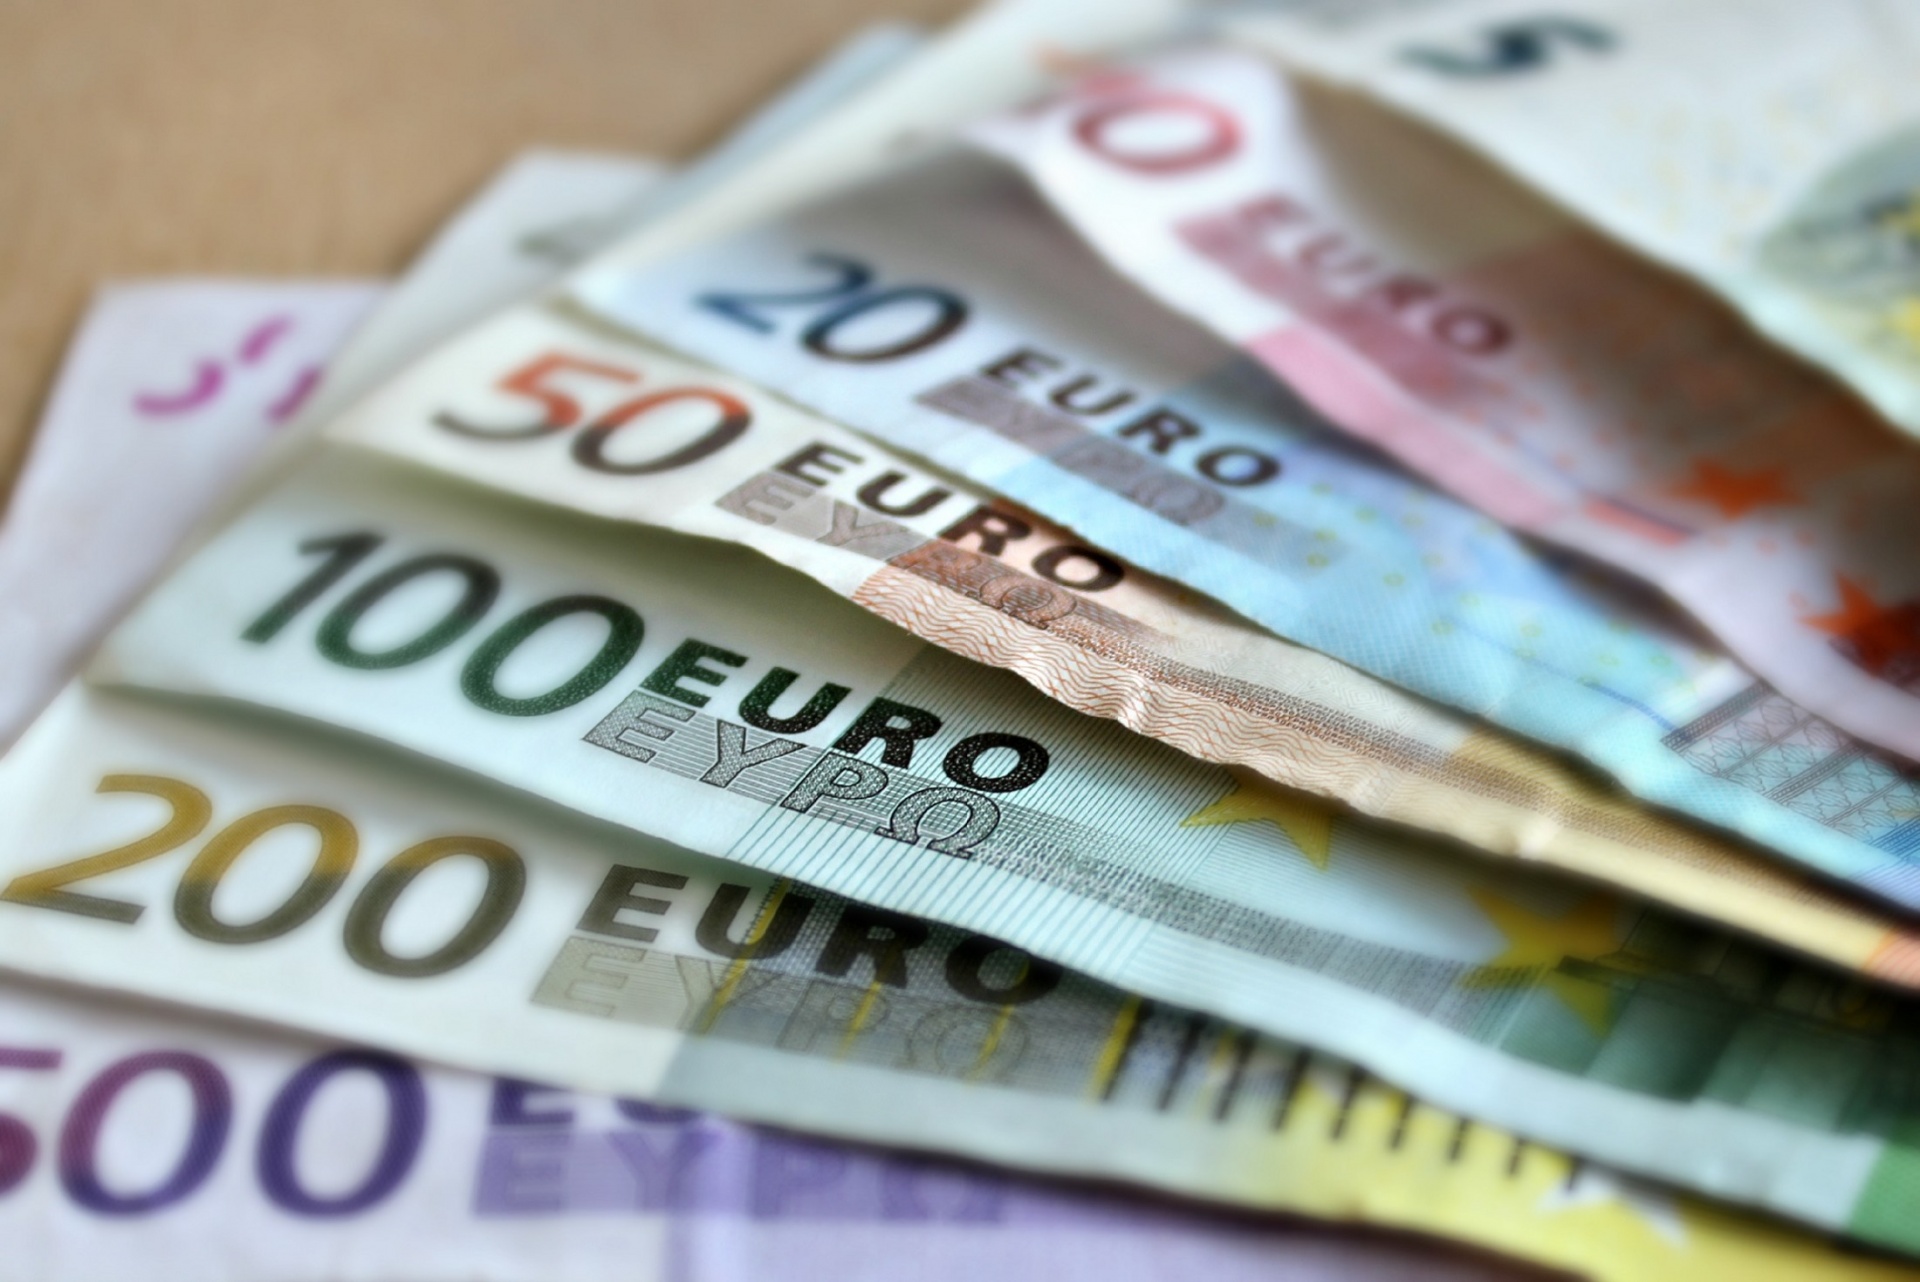     Un faussaire audacieux retire 4000 euros à la banque grâce à des papiers volés 

